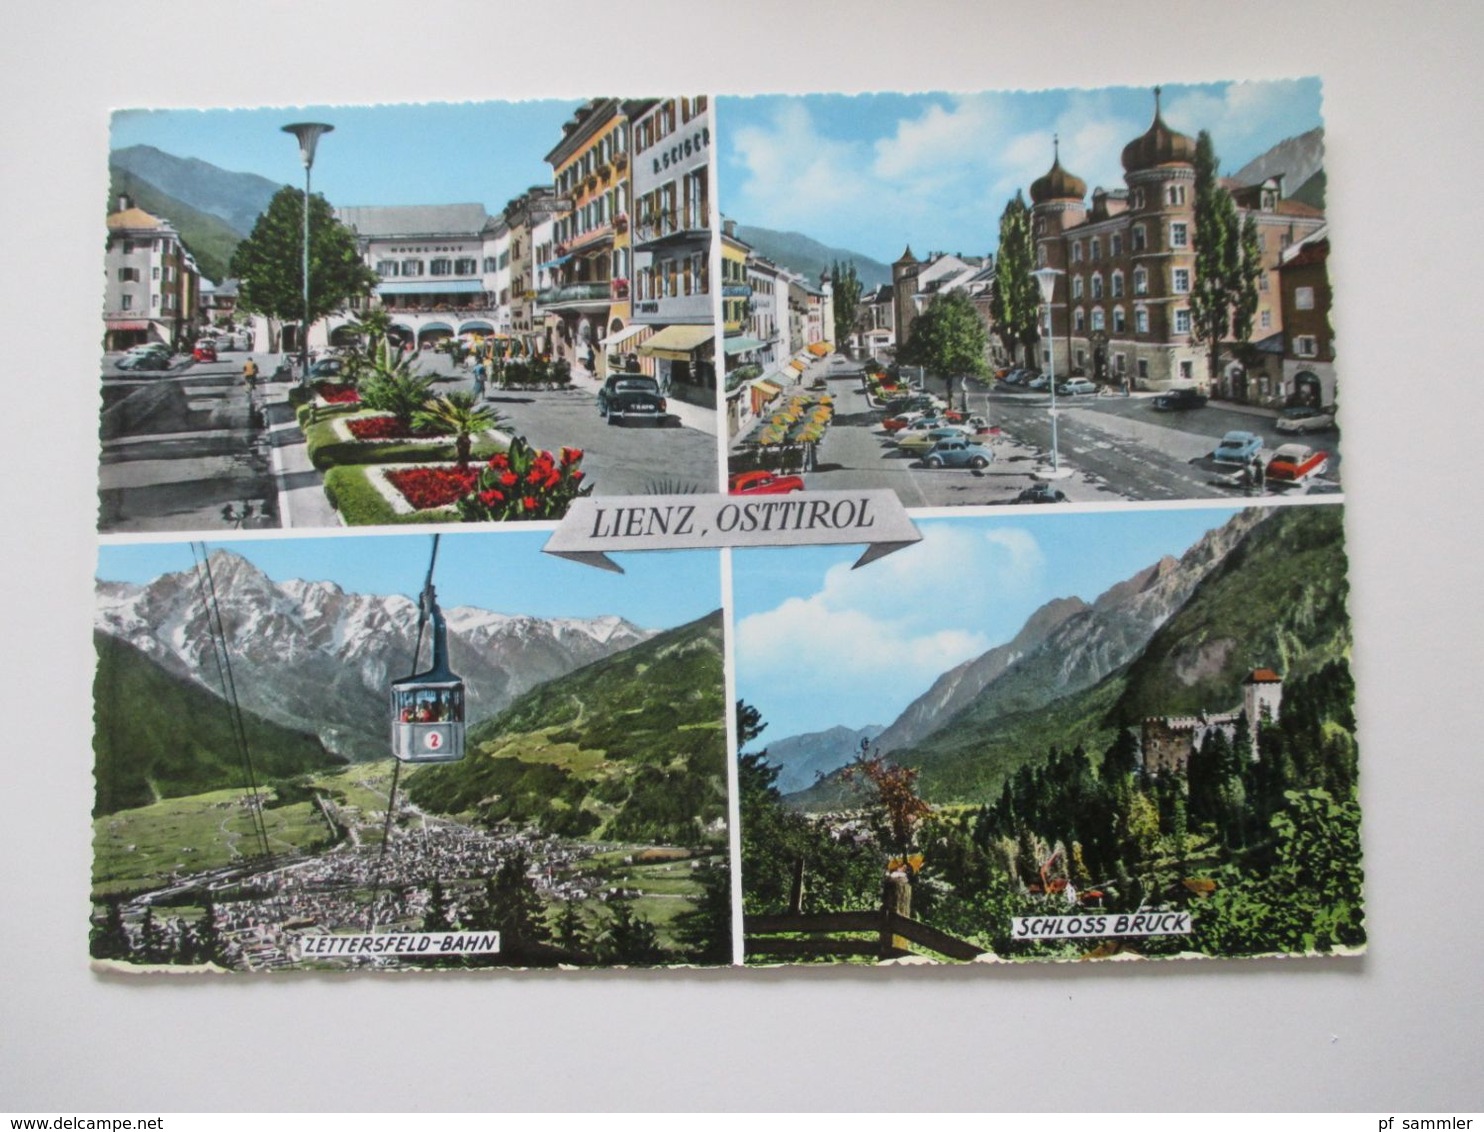 Österreich 1961 und 1964 z. B. Winterspiele 3 riesen Postkarten mit vielen Marken und Sonderstempel